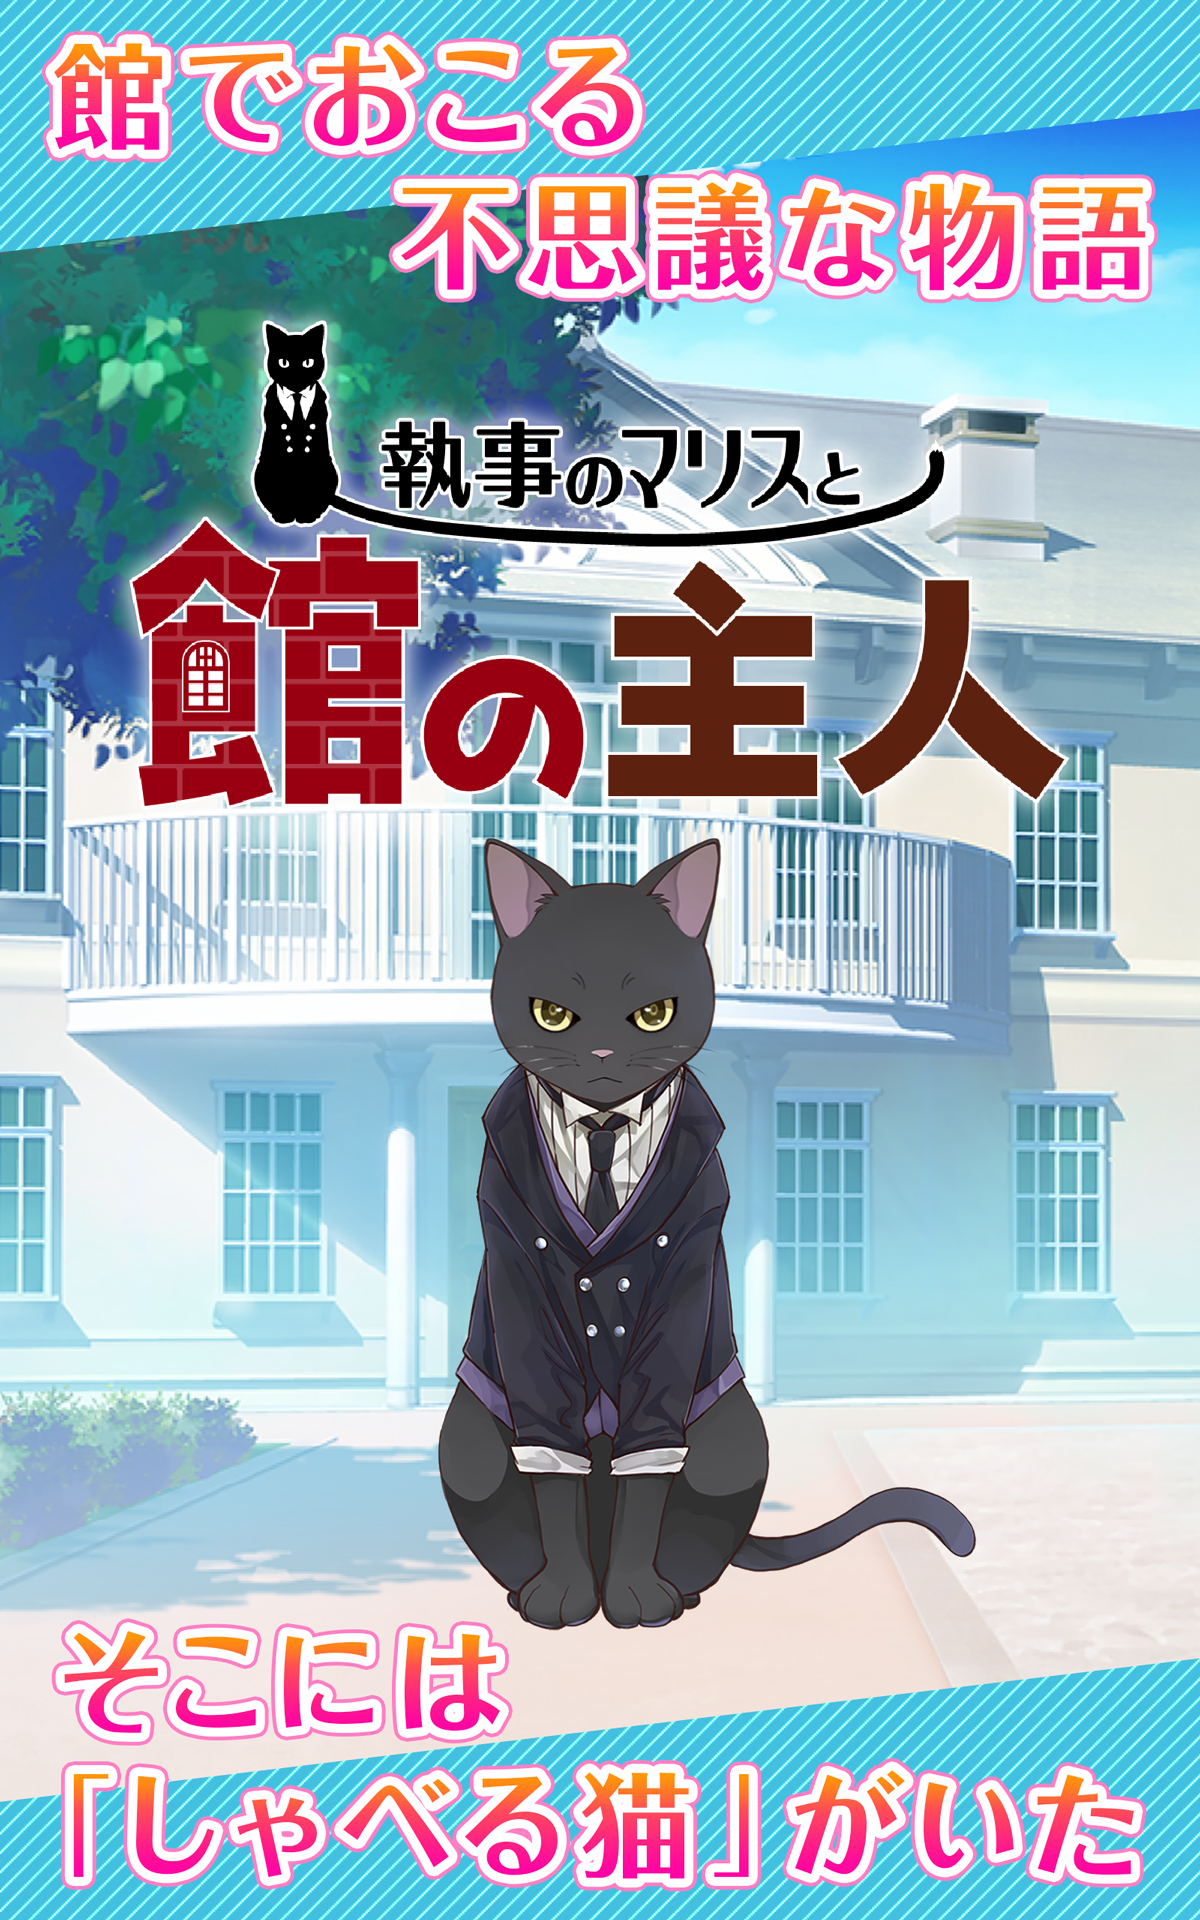 Screenshot 1 of Um mordomo gato levanta uma empregada - Um jogo de gato de enigma - Maris, o mordomo e o dono da mansão 1.0.5